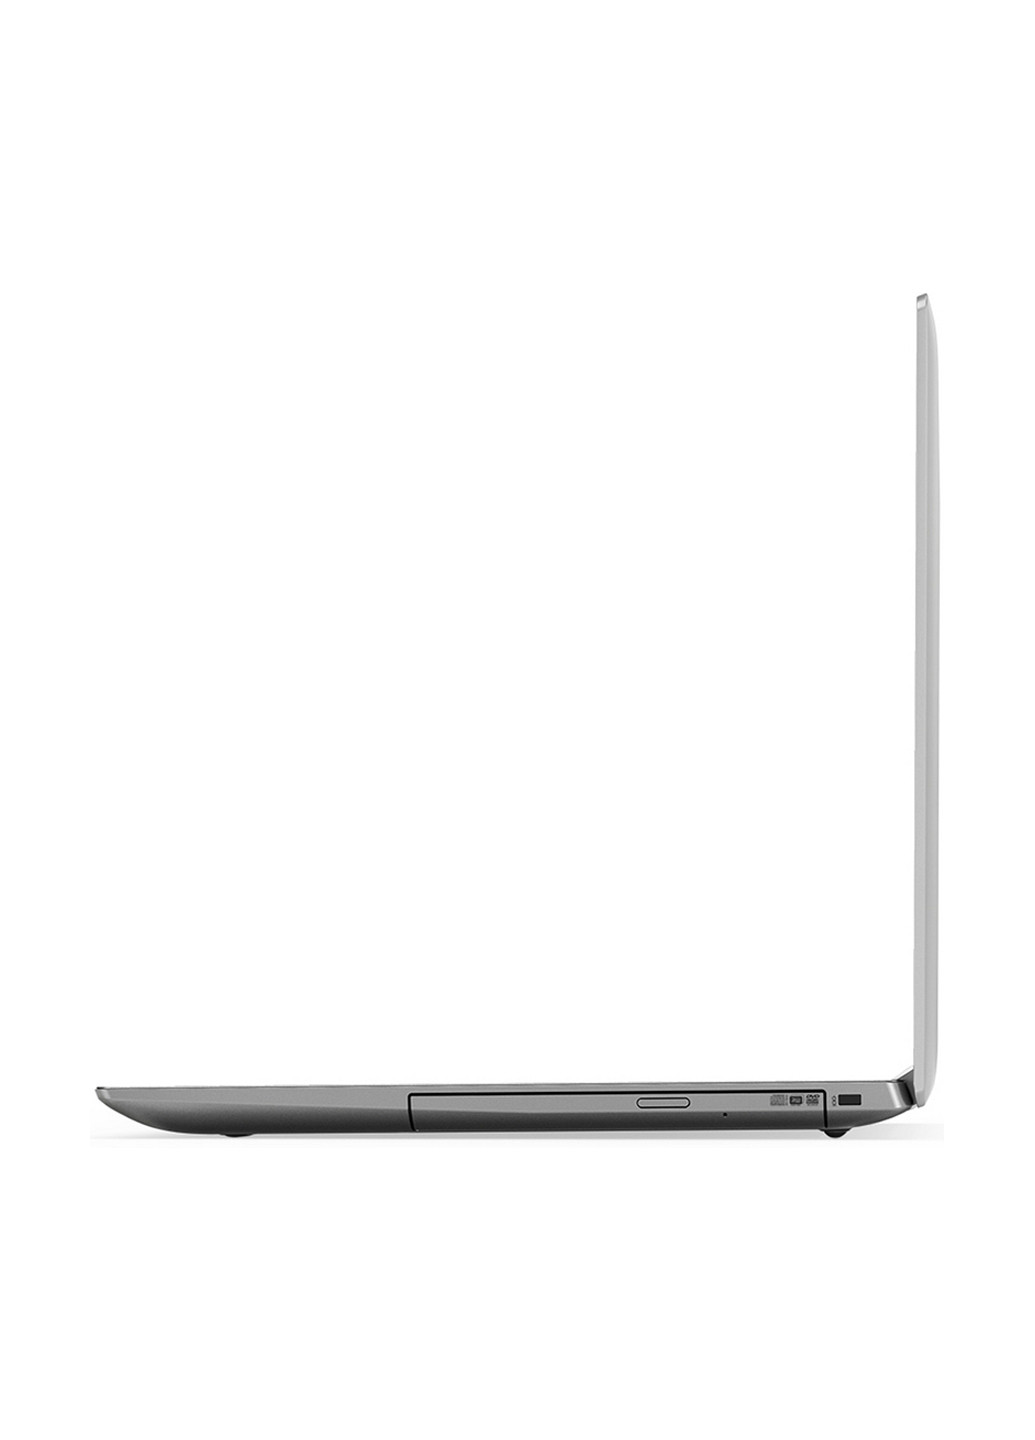 Ноутбук Lenovo ideapad 330-15 (81dc010ara) platinum grey (132994108)